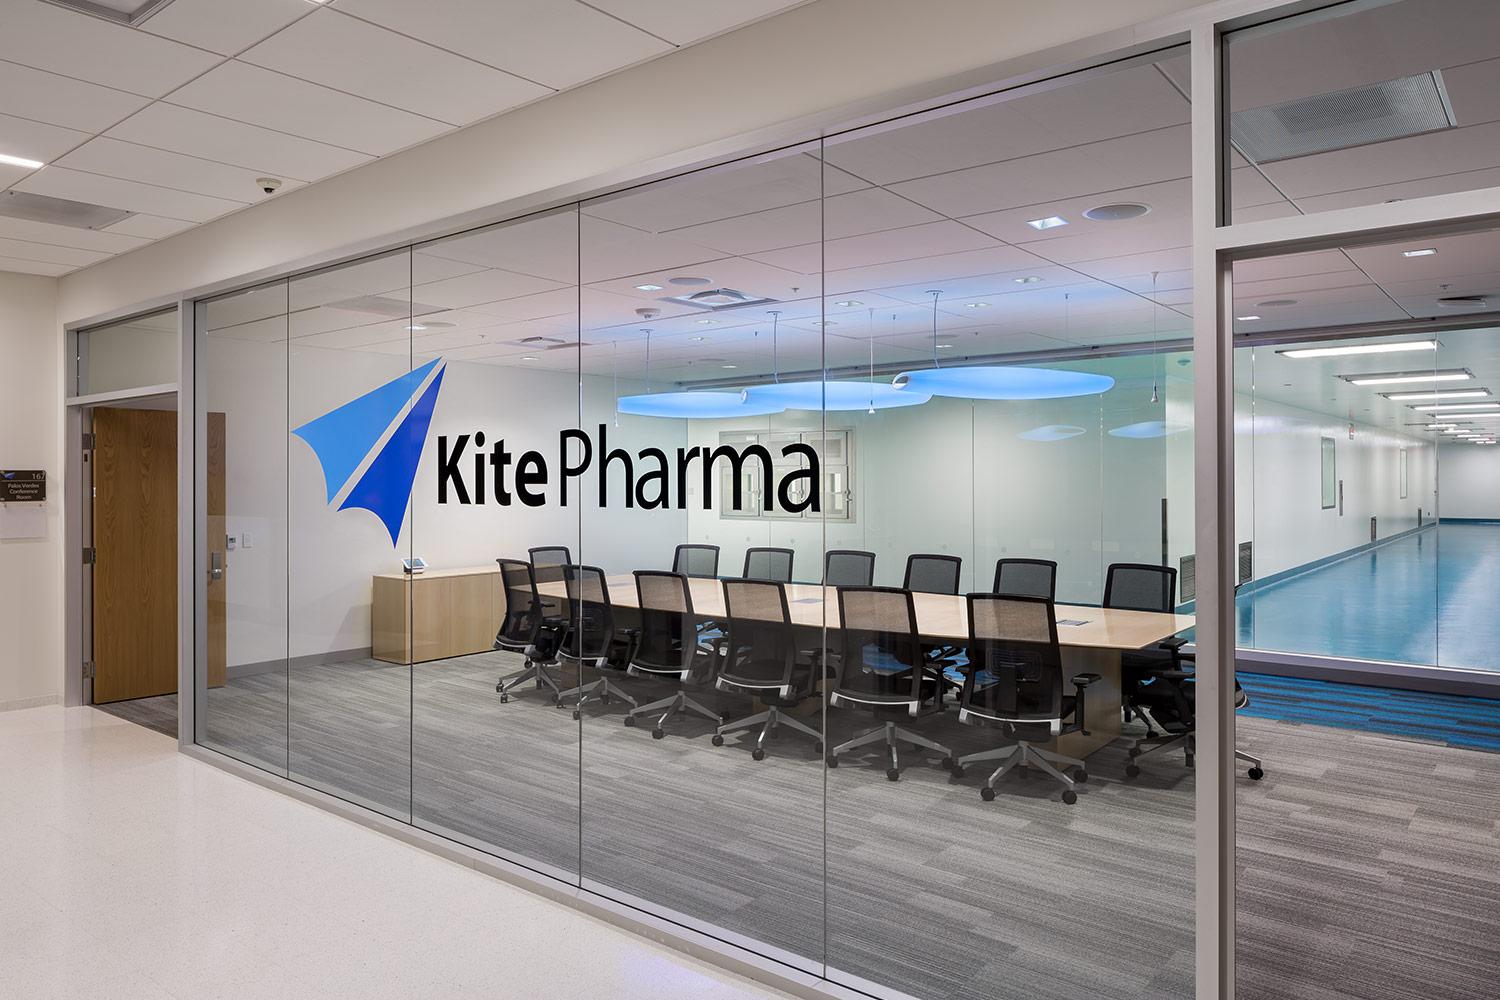 kite pharma jobs